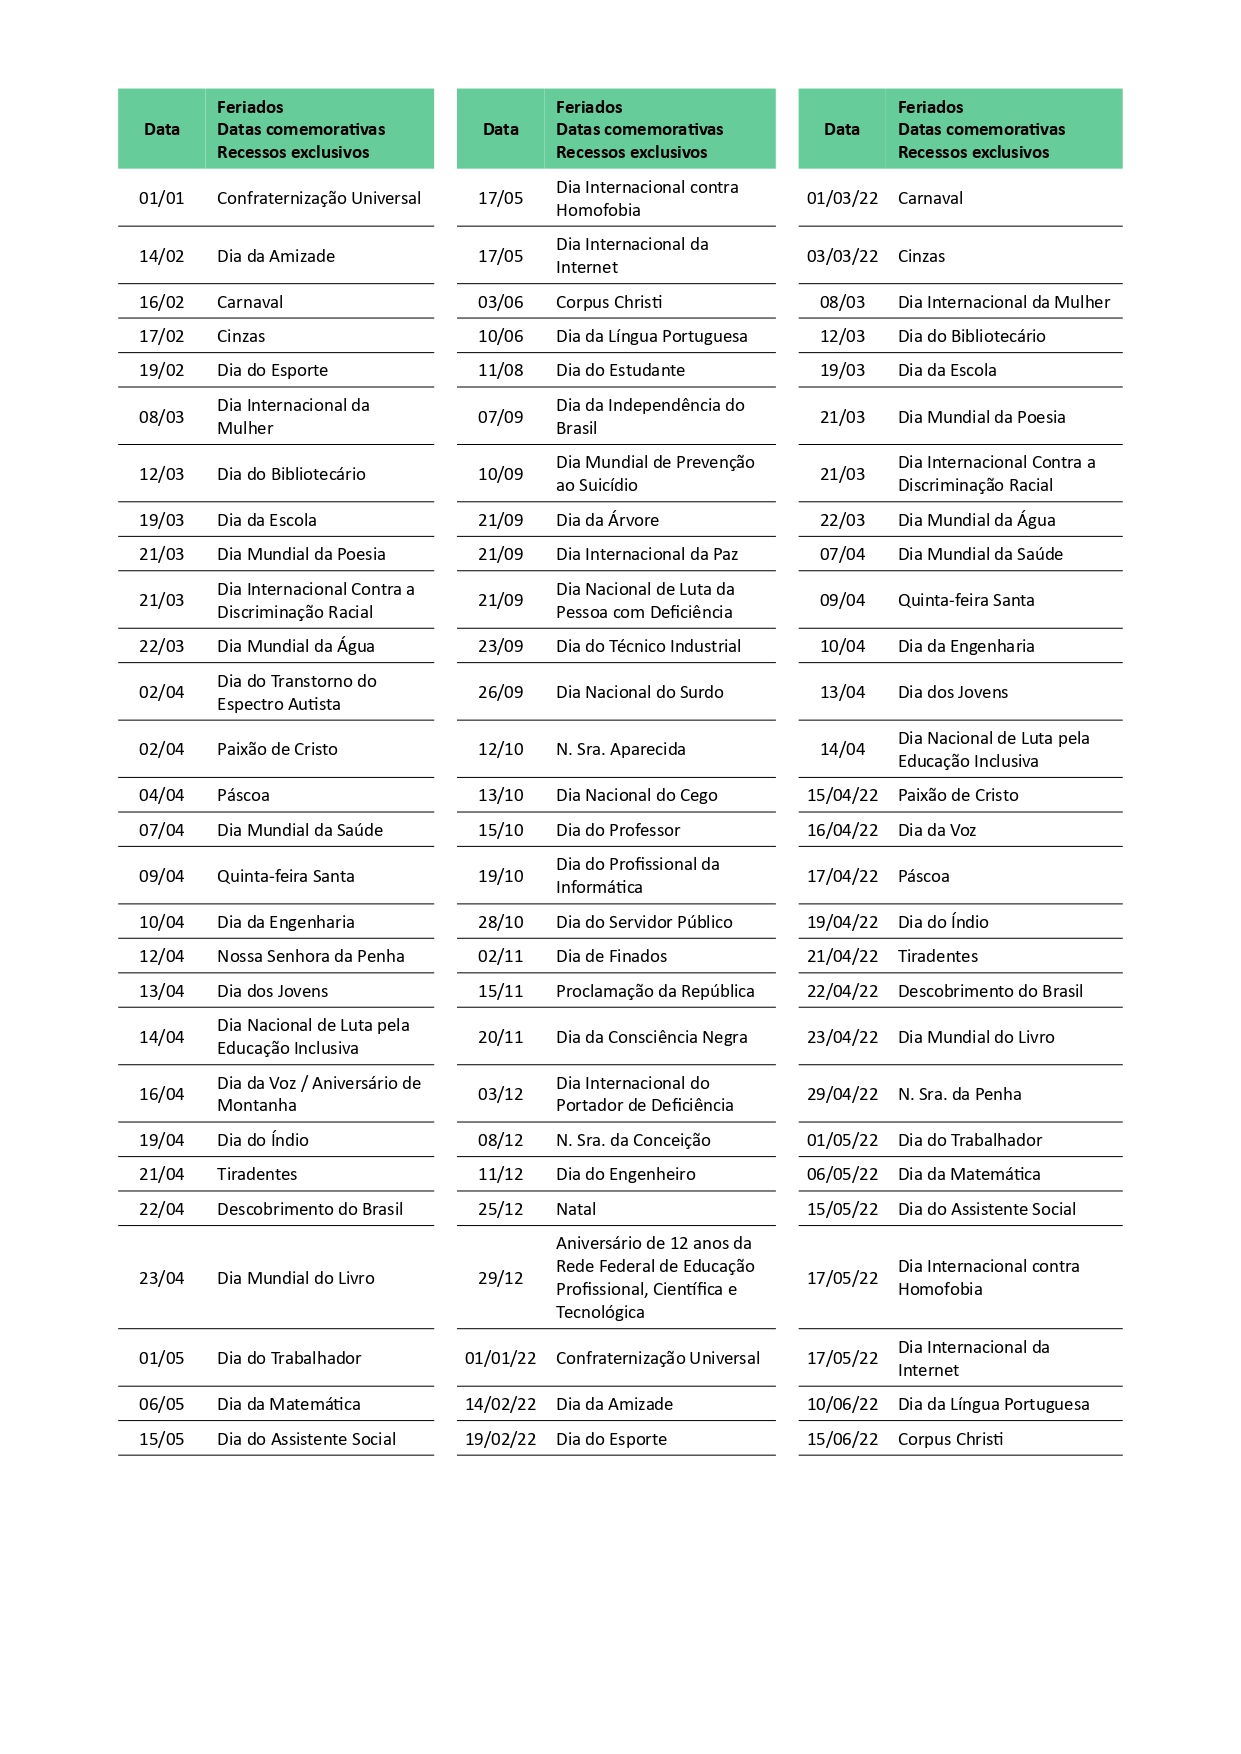 calendario academico 2021 montanha medio 1 page 0003